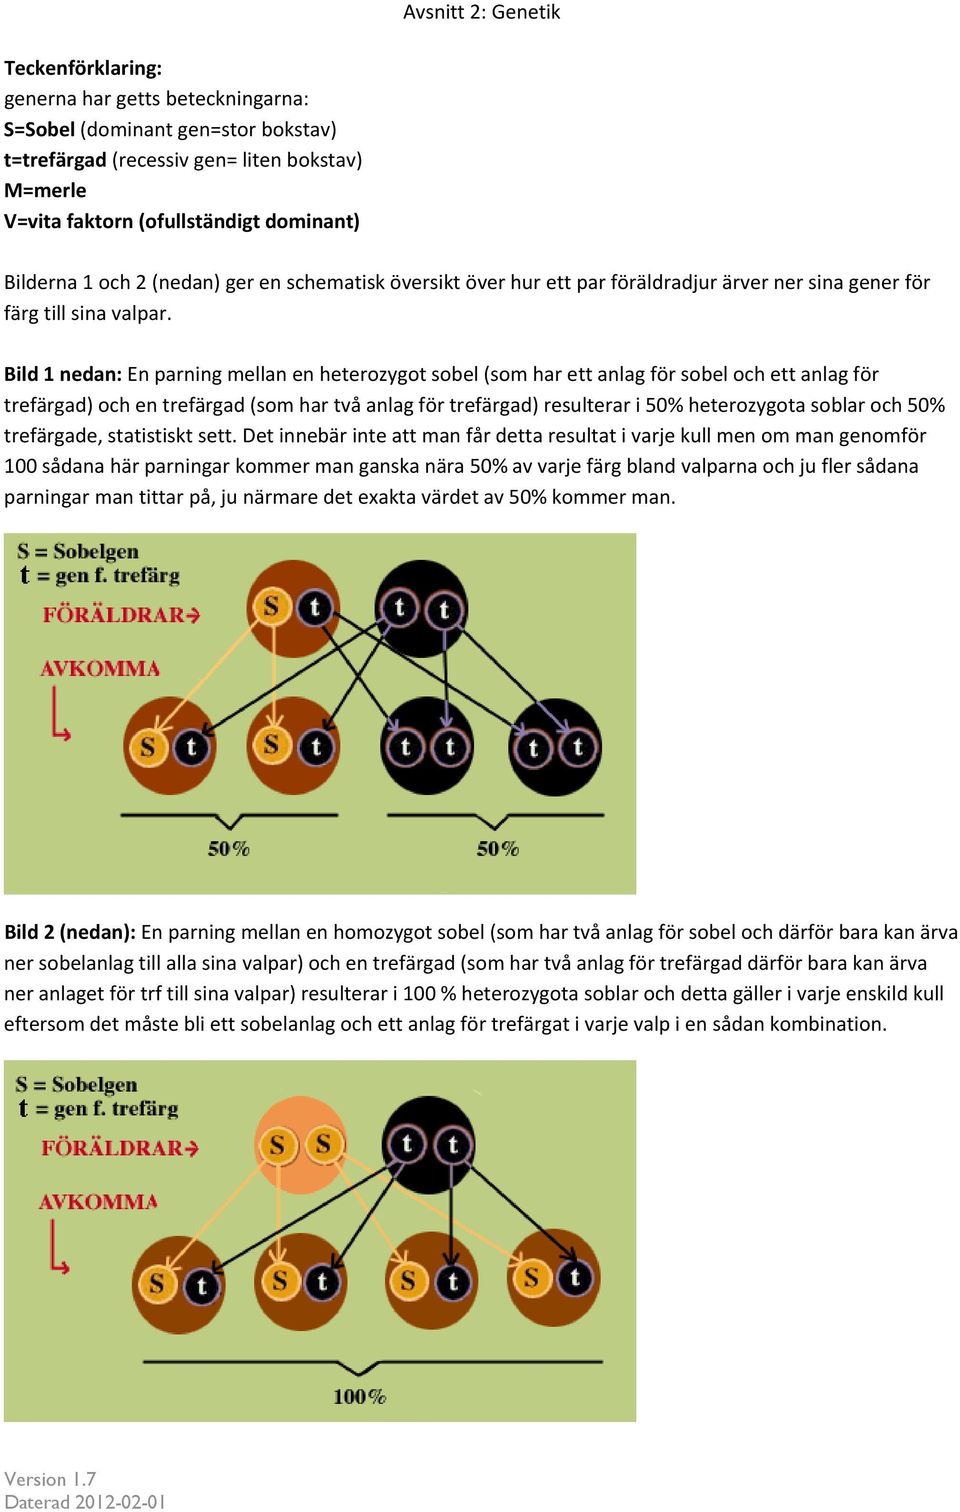 Bild 1 nedan: En parning mellan en heterozygot sobel (som har ett anlag för sobel och ett anlag för trefärgad) och en trefärgad (som har två anlag för trefärgad) resulterar i 50% heterozygota soblar